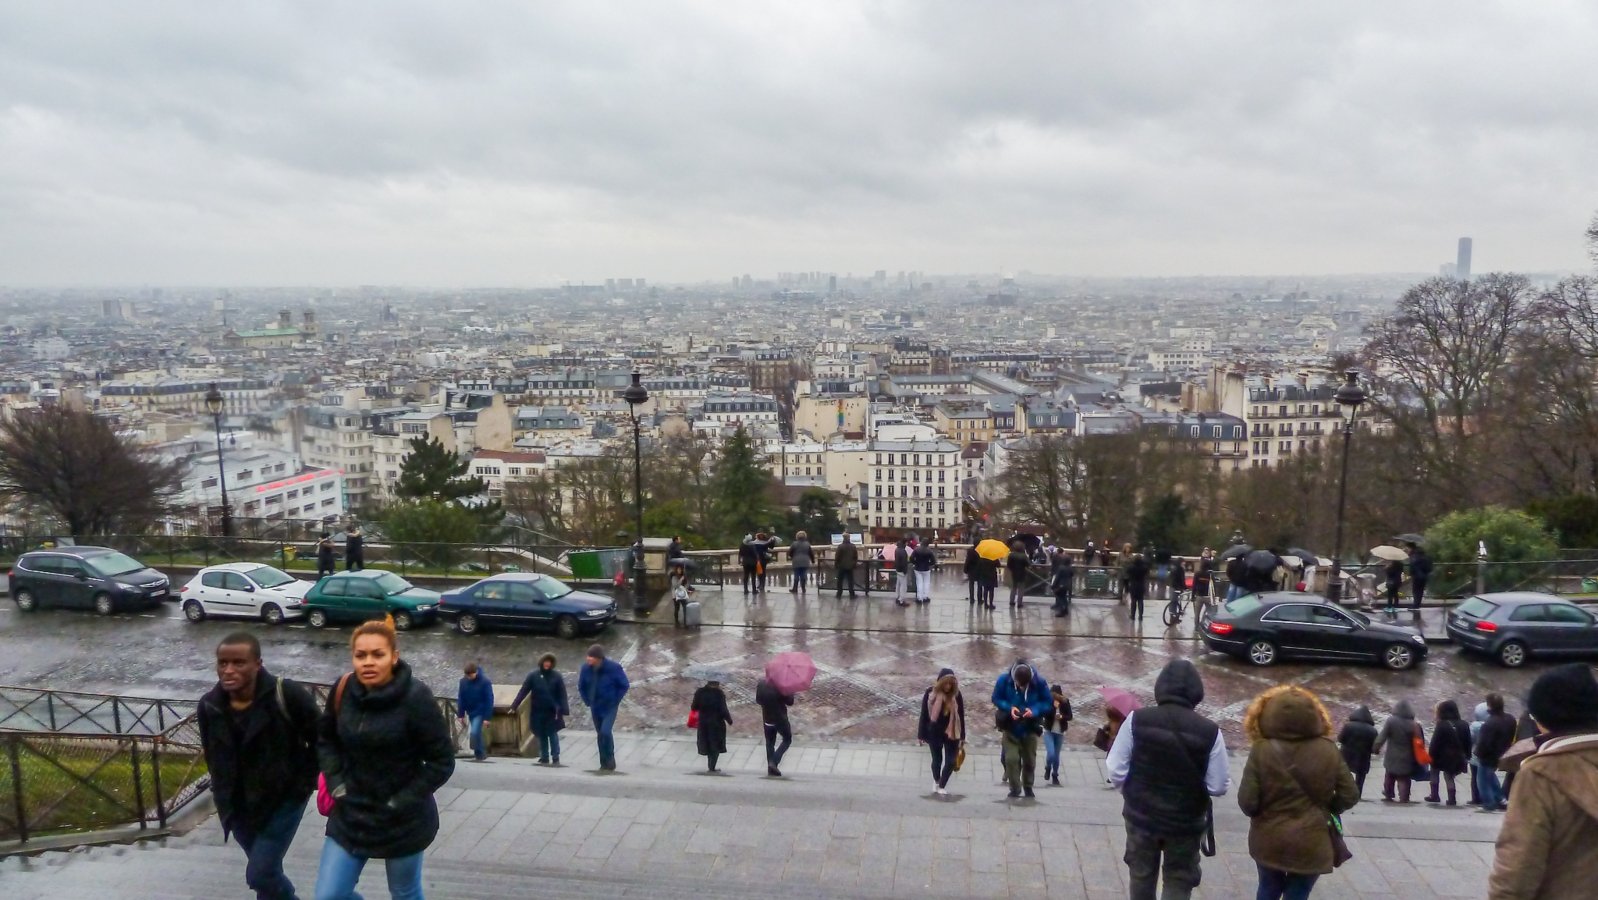 Sacré-Cur de Montmartre - View to Paris